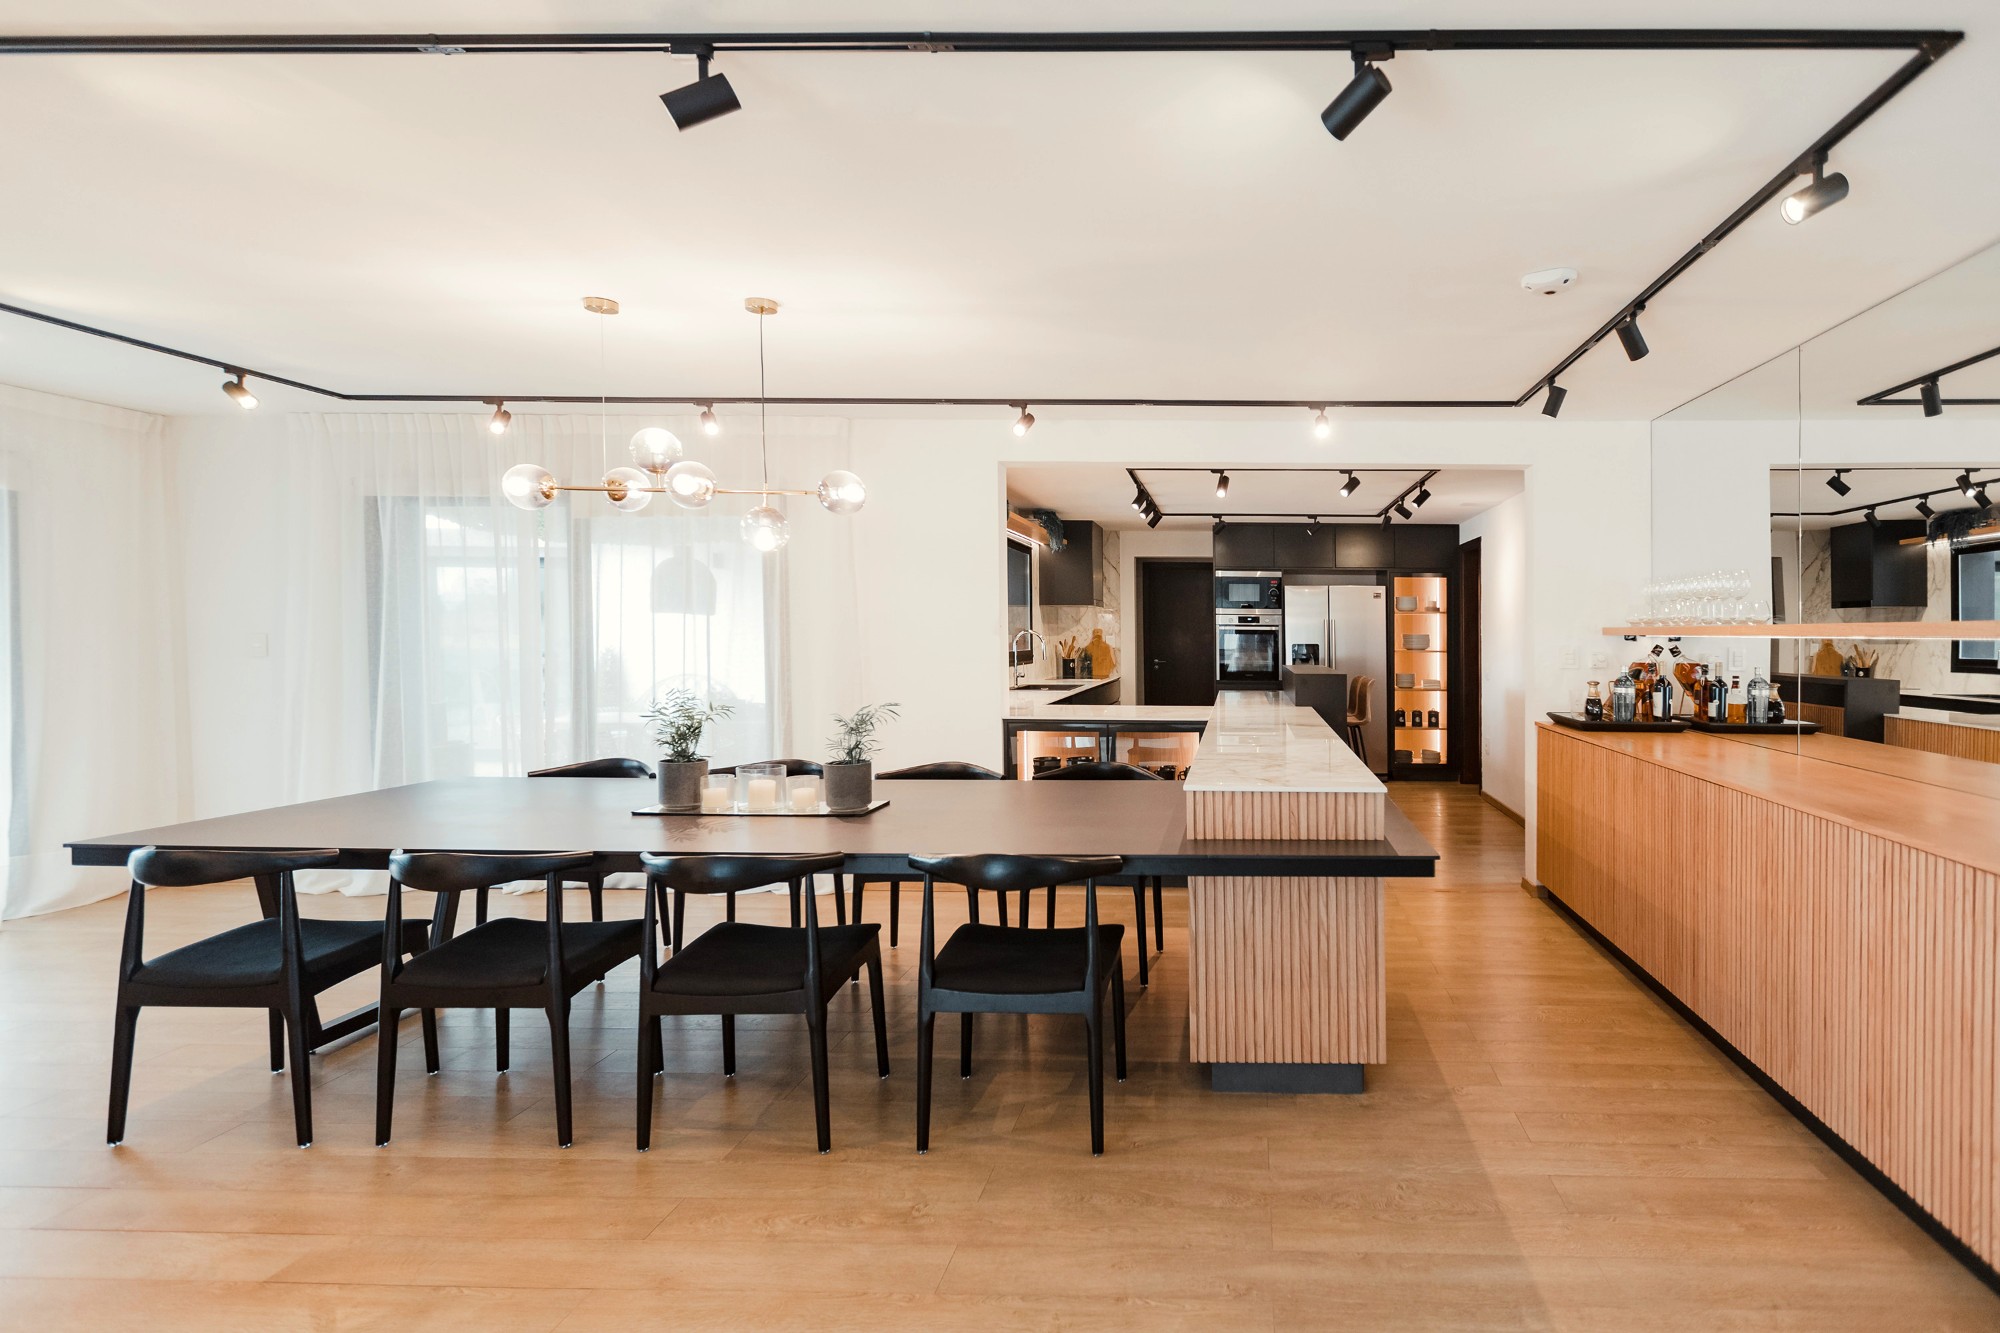 Bildnummer 16 des aktuellen Abschnitts von Kitchen and dining room merged by a precise design von Cosentino Deutschland